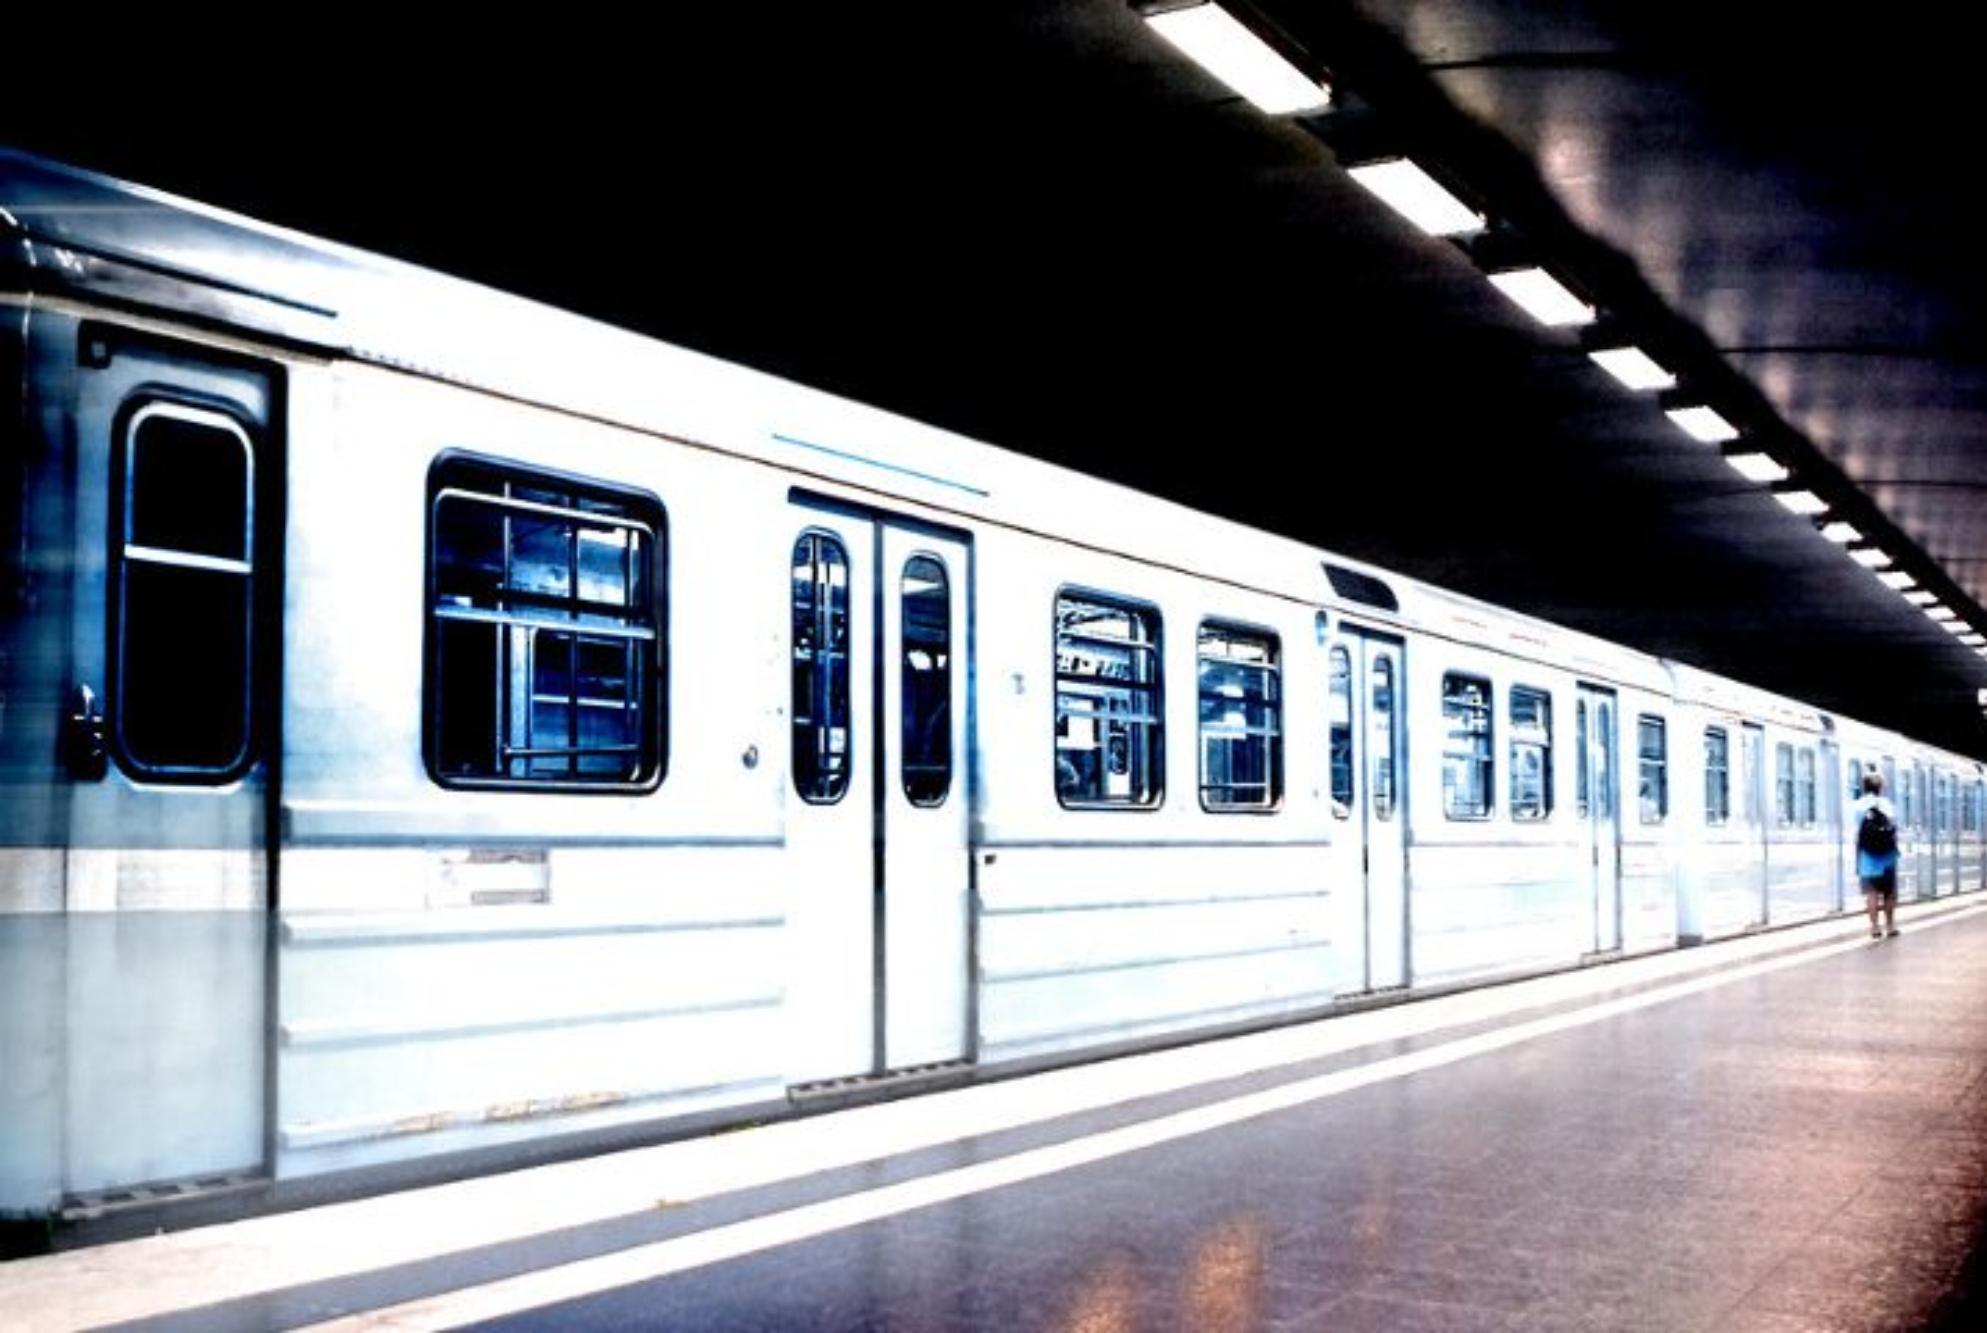 Η αληθινή ιστορία του Silverpilen: Το τρένο φάντασμα που «καταπίνει» ανθρώπους